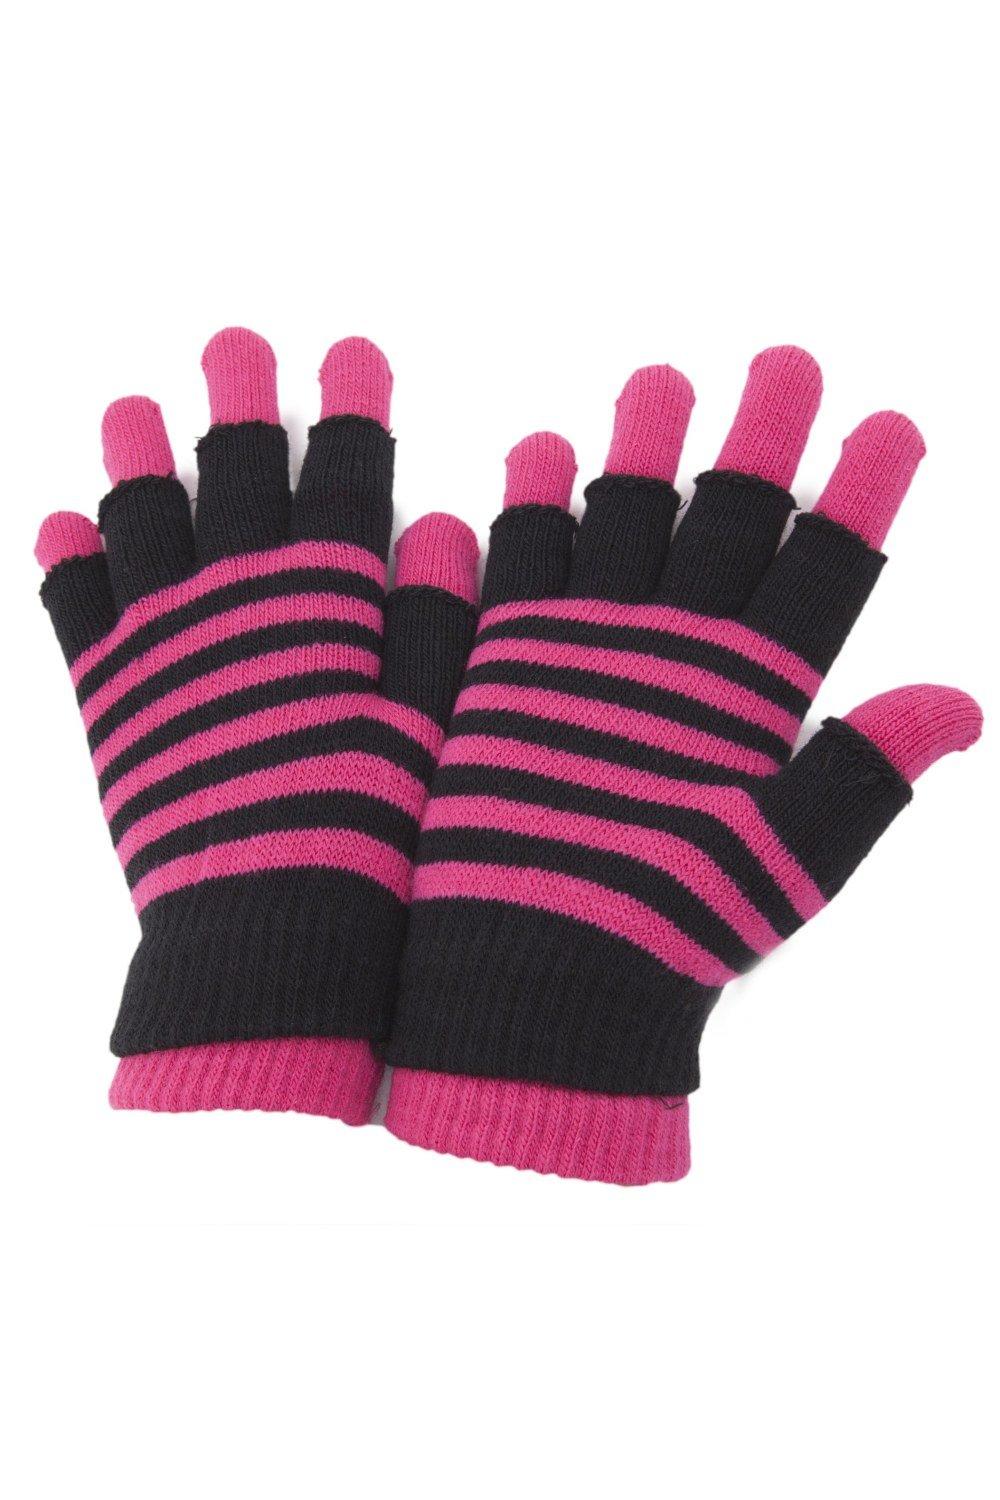 Полосатые термоволшебные перчатки 2 в 1 (без пальцев и с полными пальцами) Universal Textiles, розовый перчатки с пальцами и без пальцев h